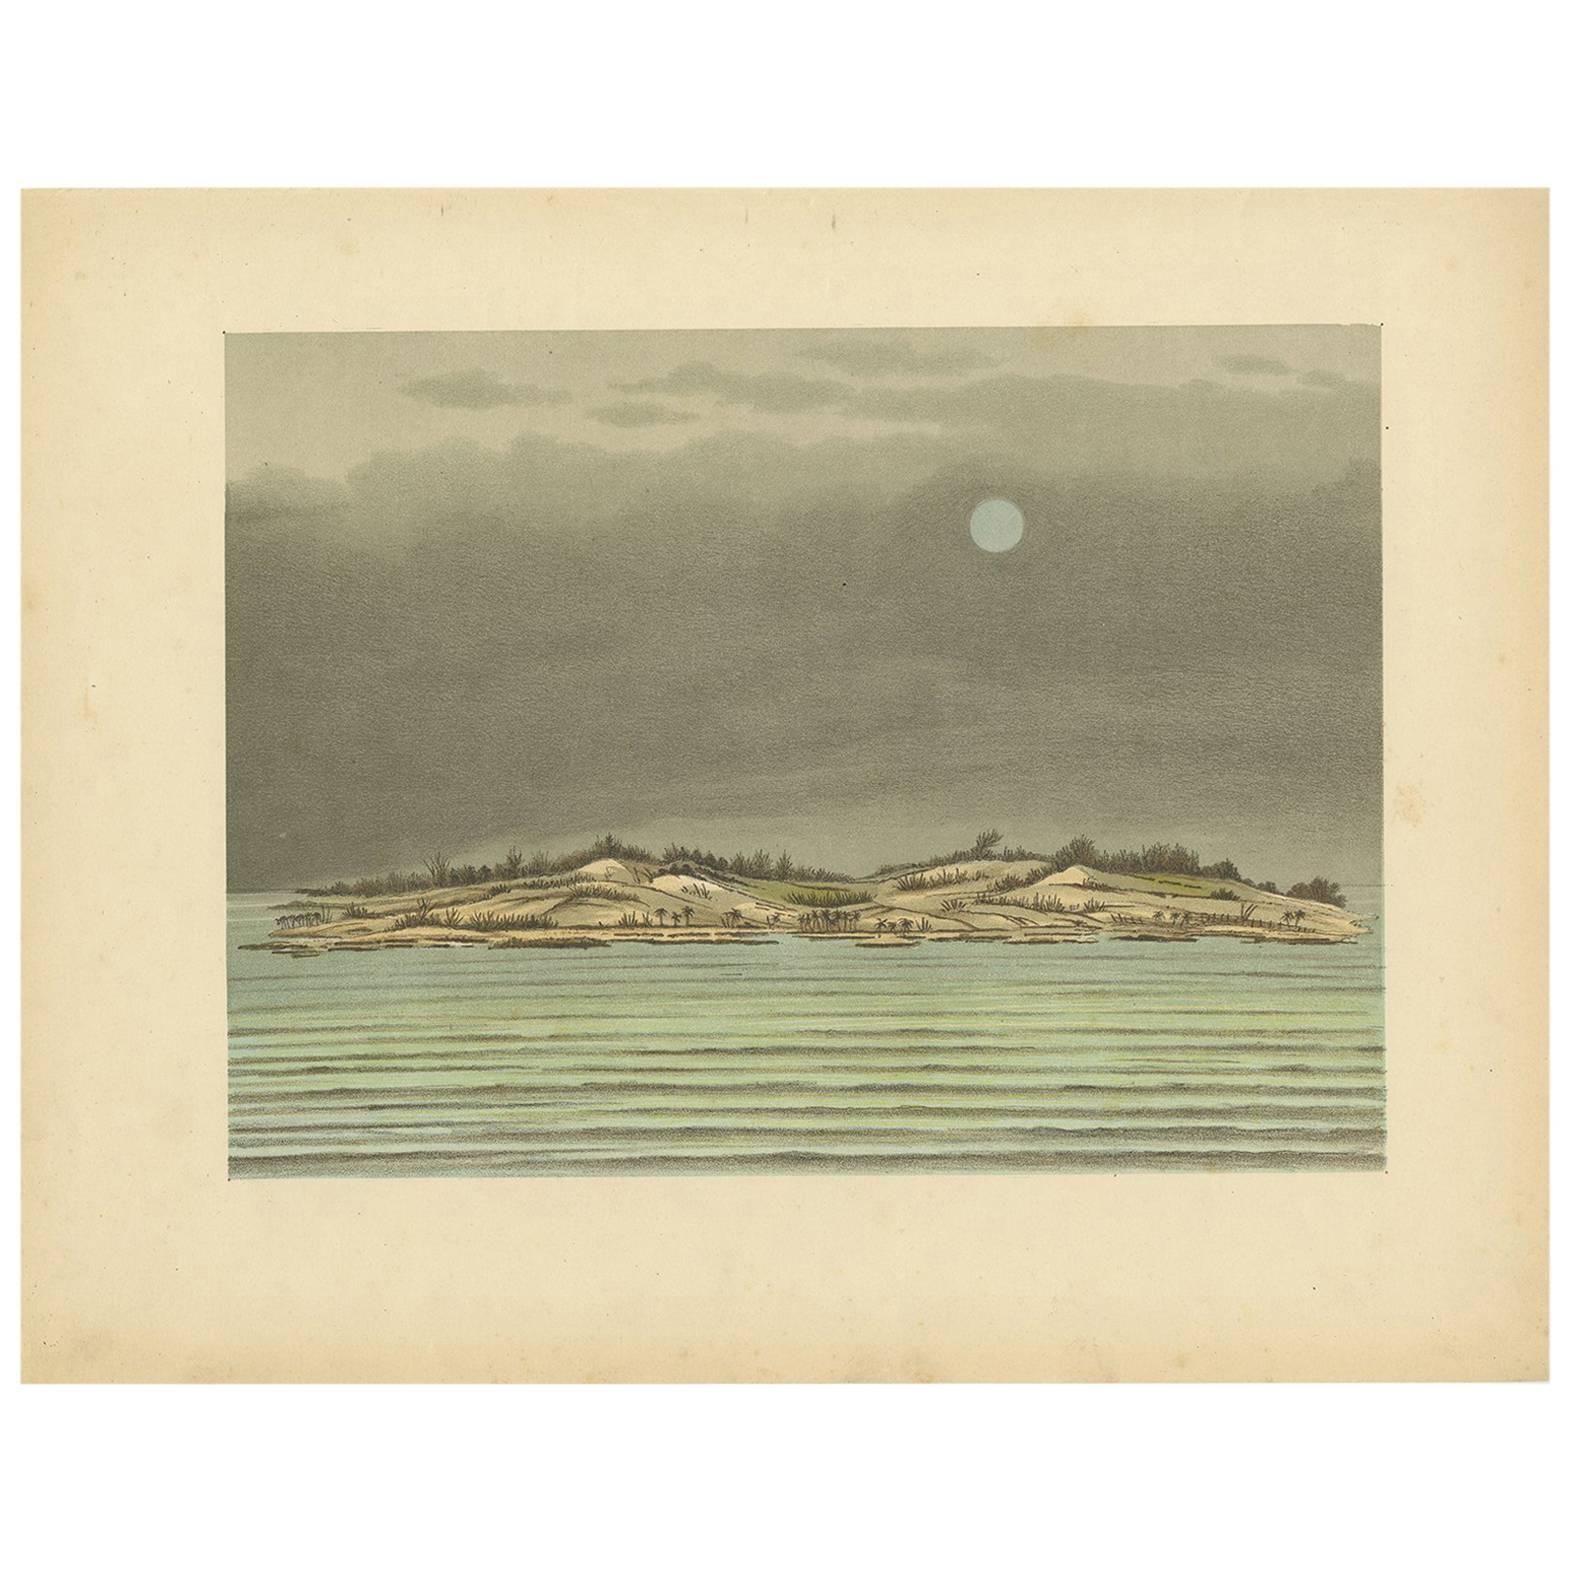 Antiker Druck von Tanjung Belimbing von M.T.H. Perelaer, 1888